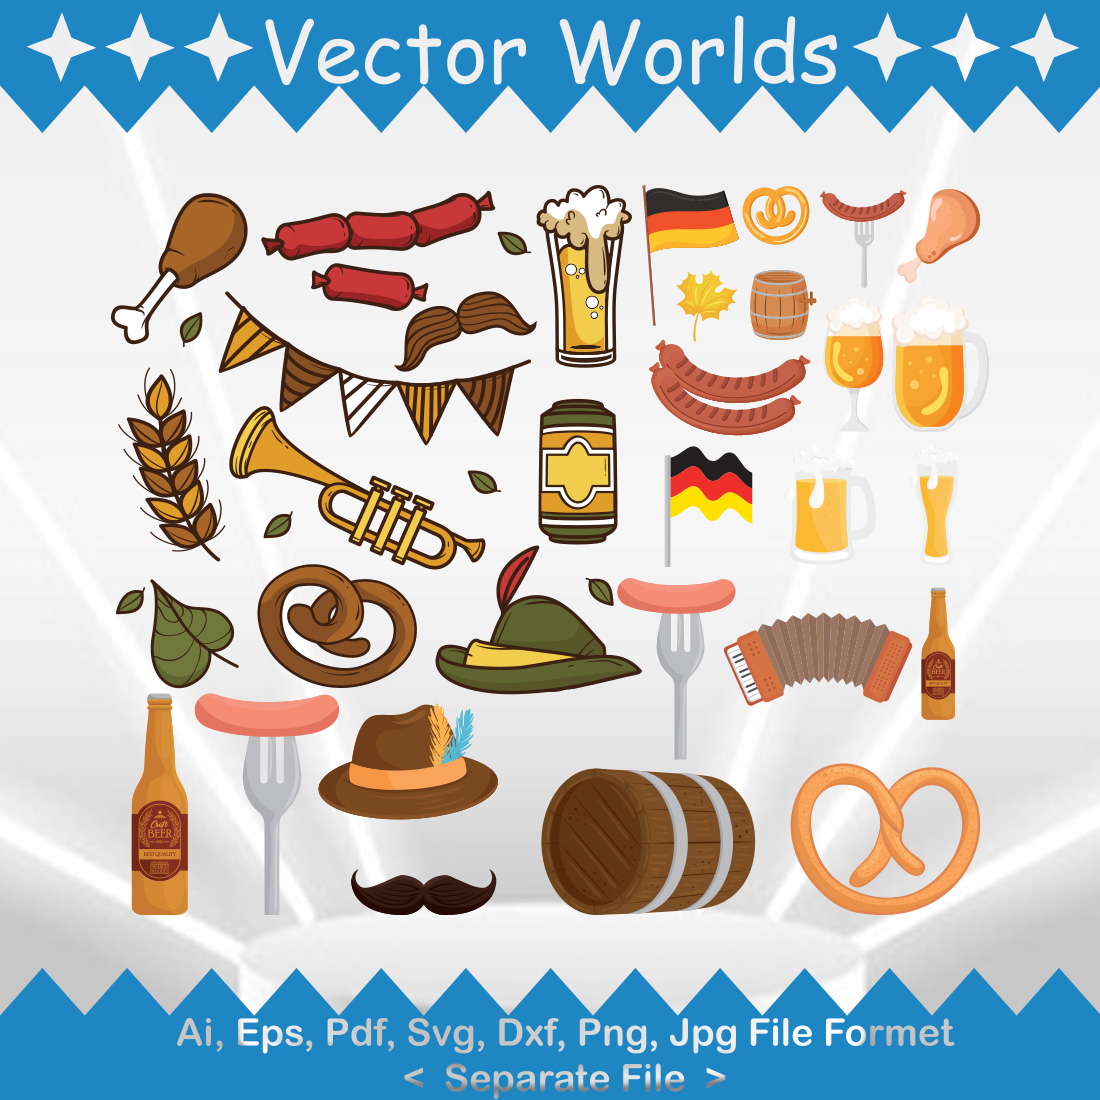 Oktoberfest SVG Vector Design preview image.